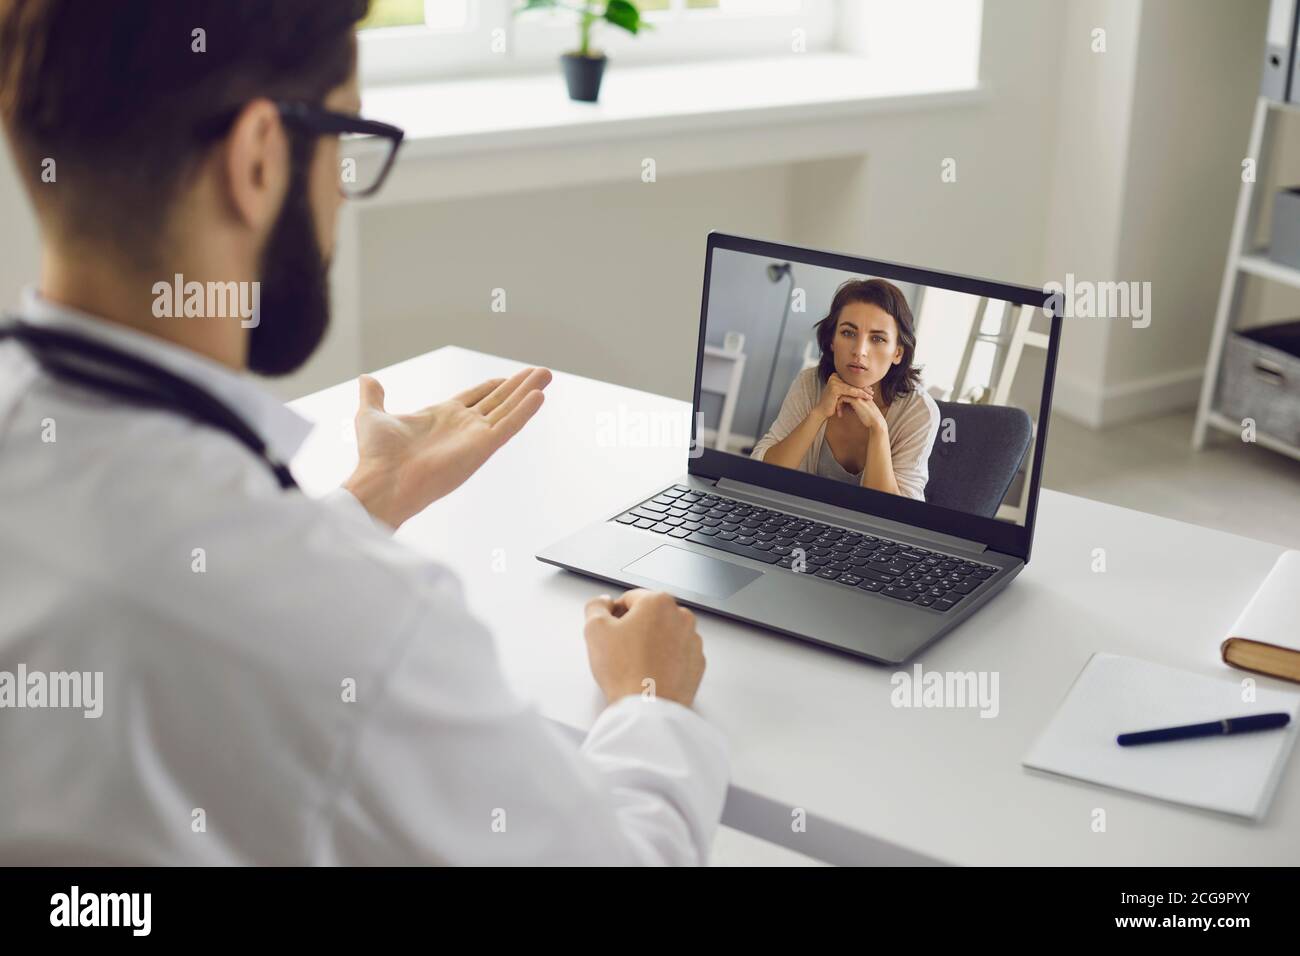 Consultazione medica online. Un uomo seduto nel suo ufficio usa un laptop, una videochiamata e ascolta un paziente. Foto Stock